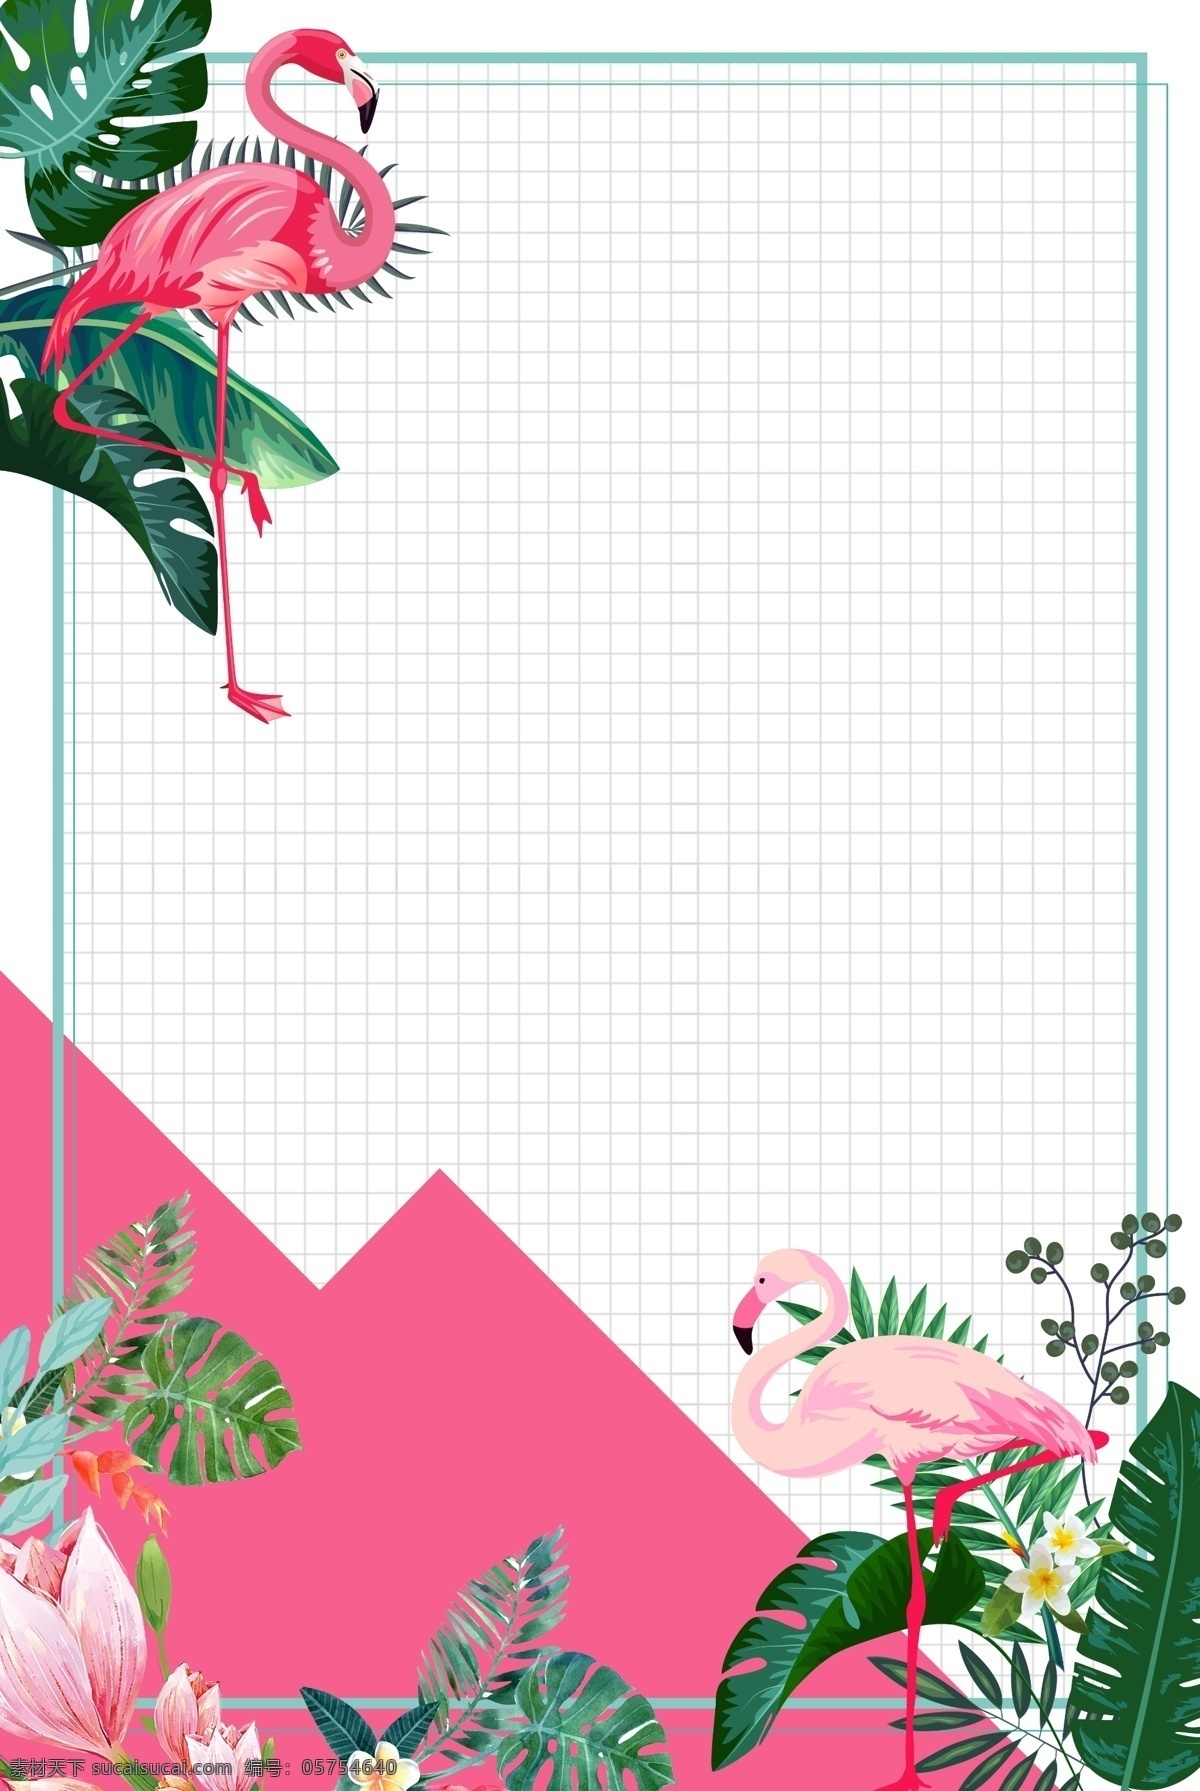 简约 热带 植物 火烈鸟 背景 绿叶 边框 背景图 创意 广告背景 手绘背景 通用背景 促销背景 背景展板图